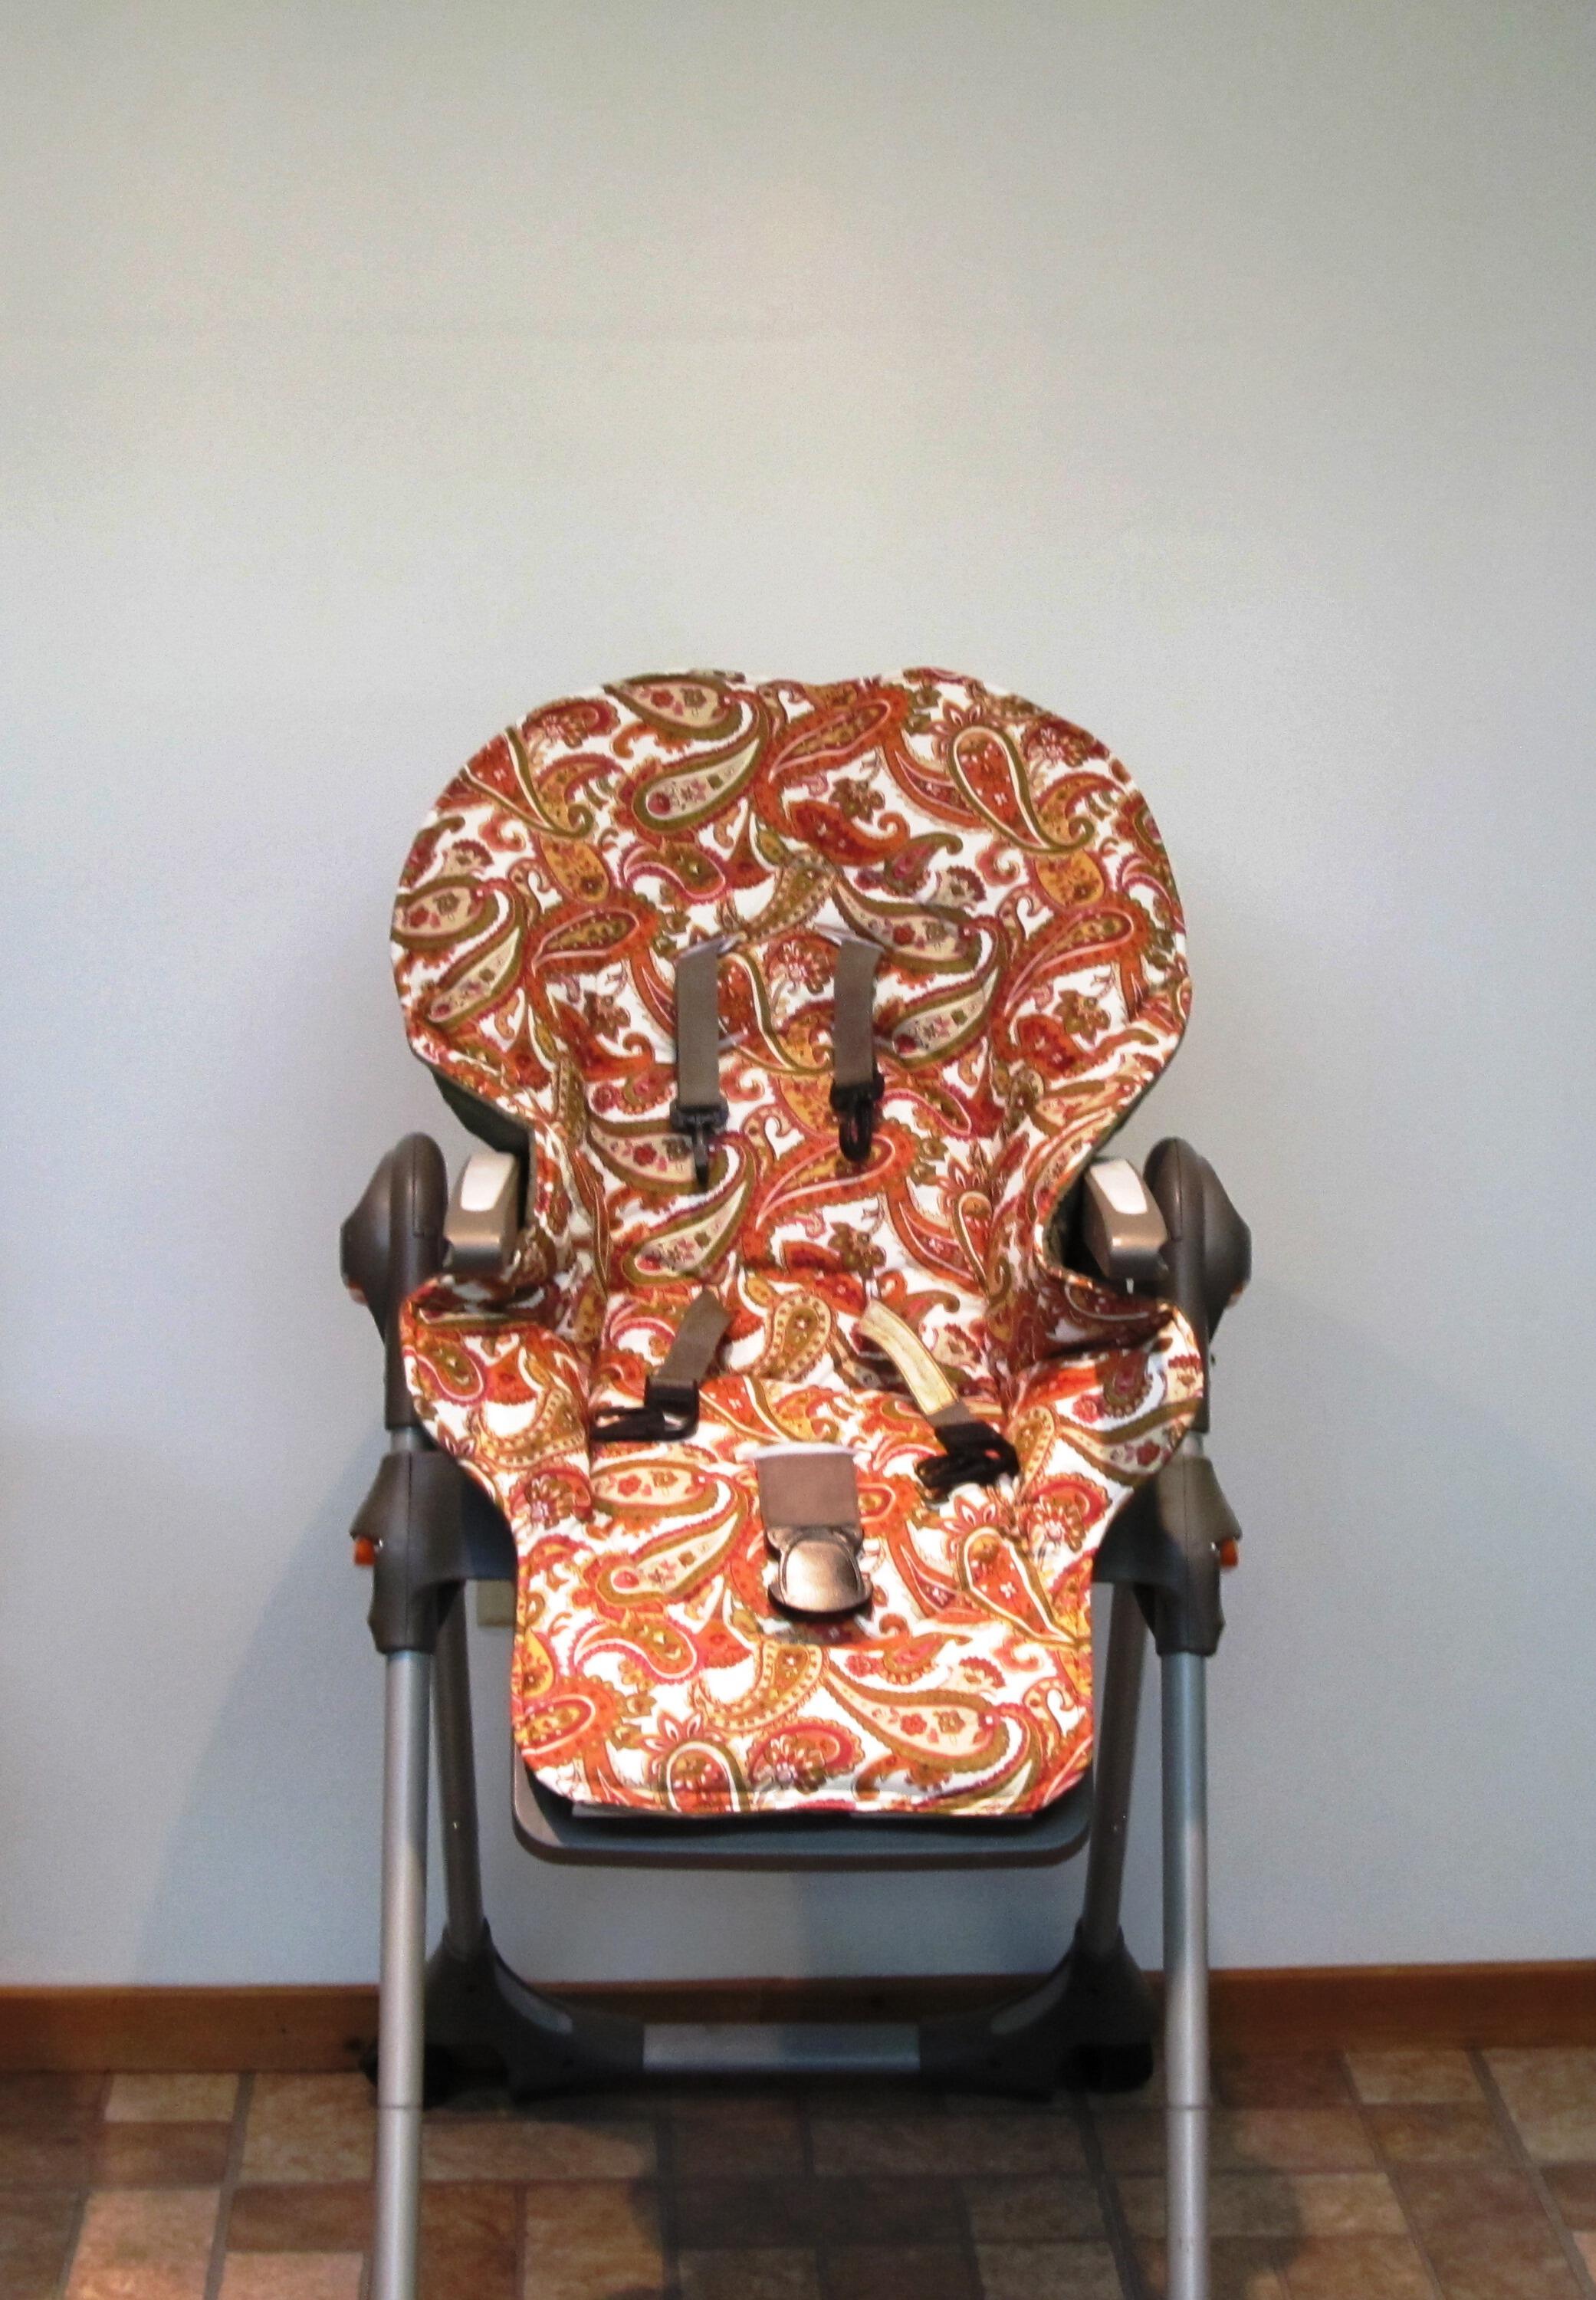 graco high chair cushion replacement